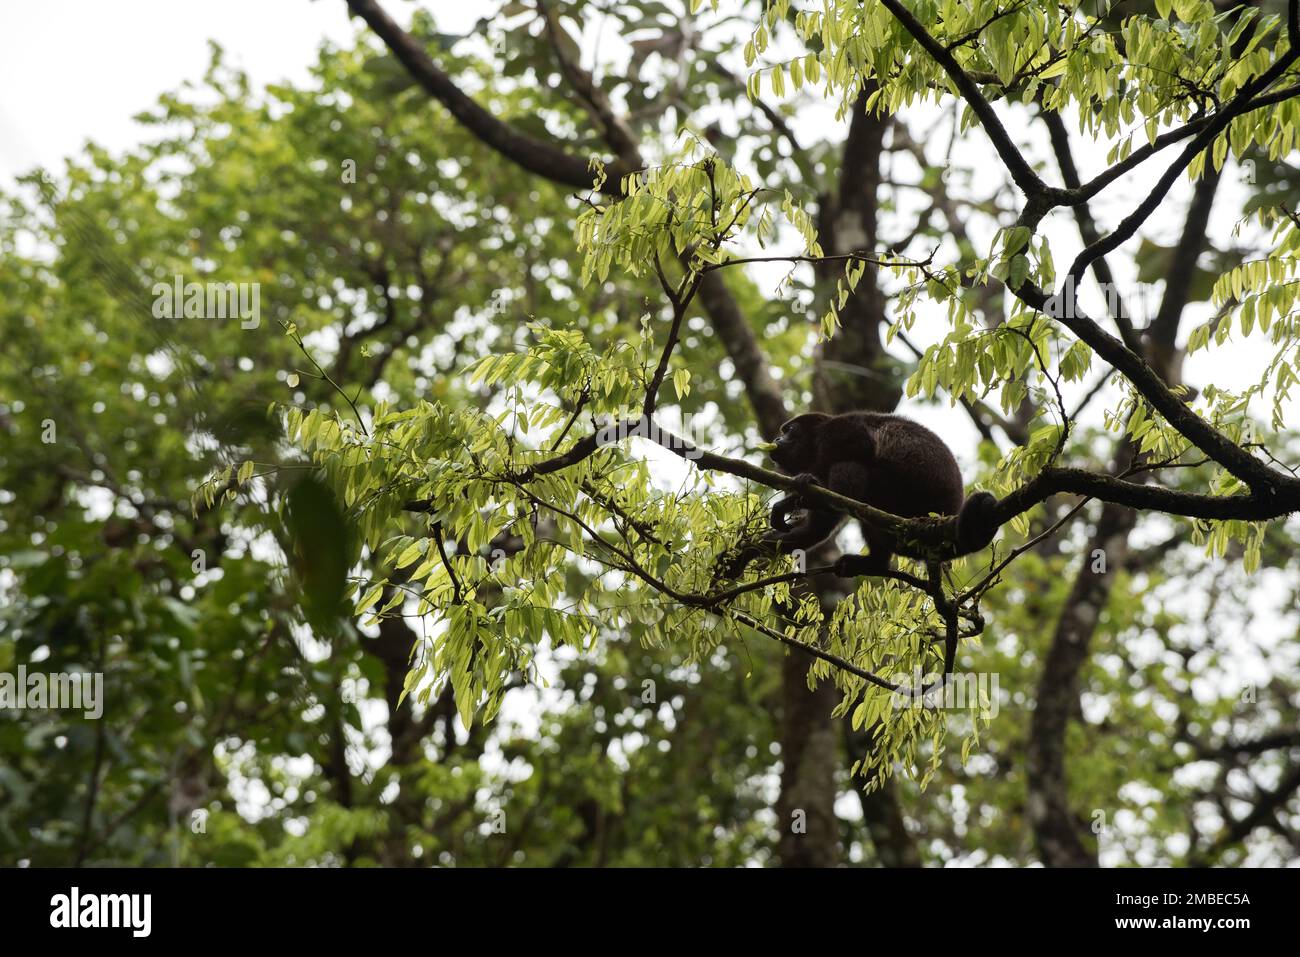 Brüllaffe im Costa-ricanischen Regenwald, hoch oben auf einem Ast, isst Blätter. Singe Hurleur dans la forêt Tropical du Costa Rica Perché Stockfoto